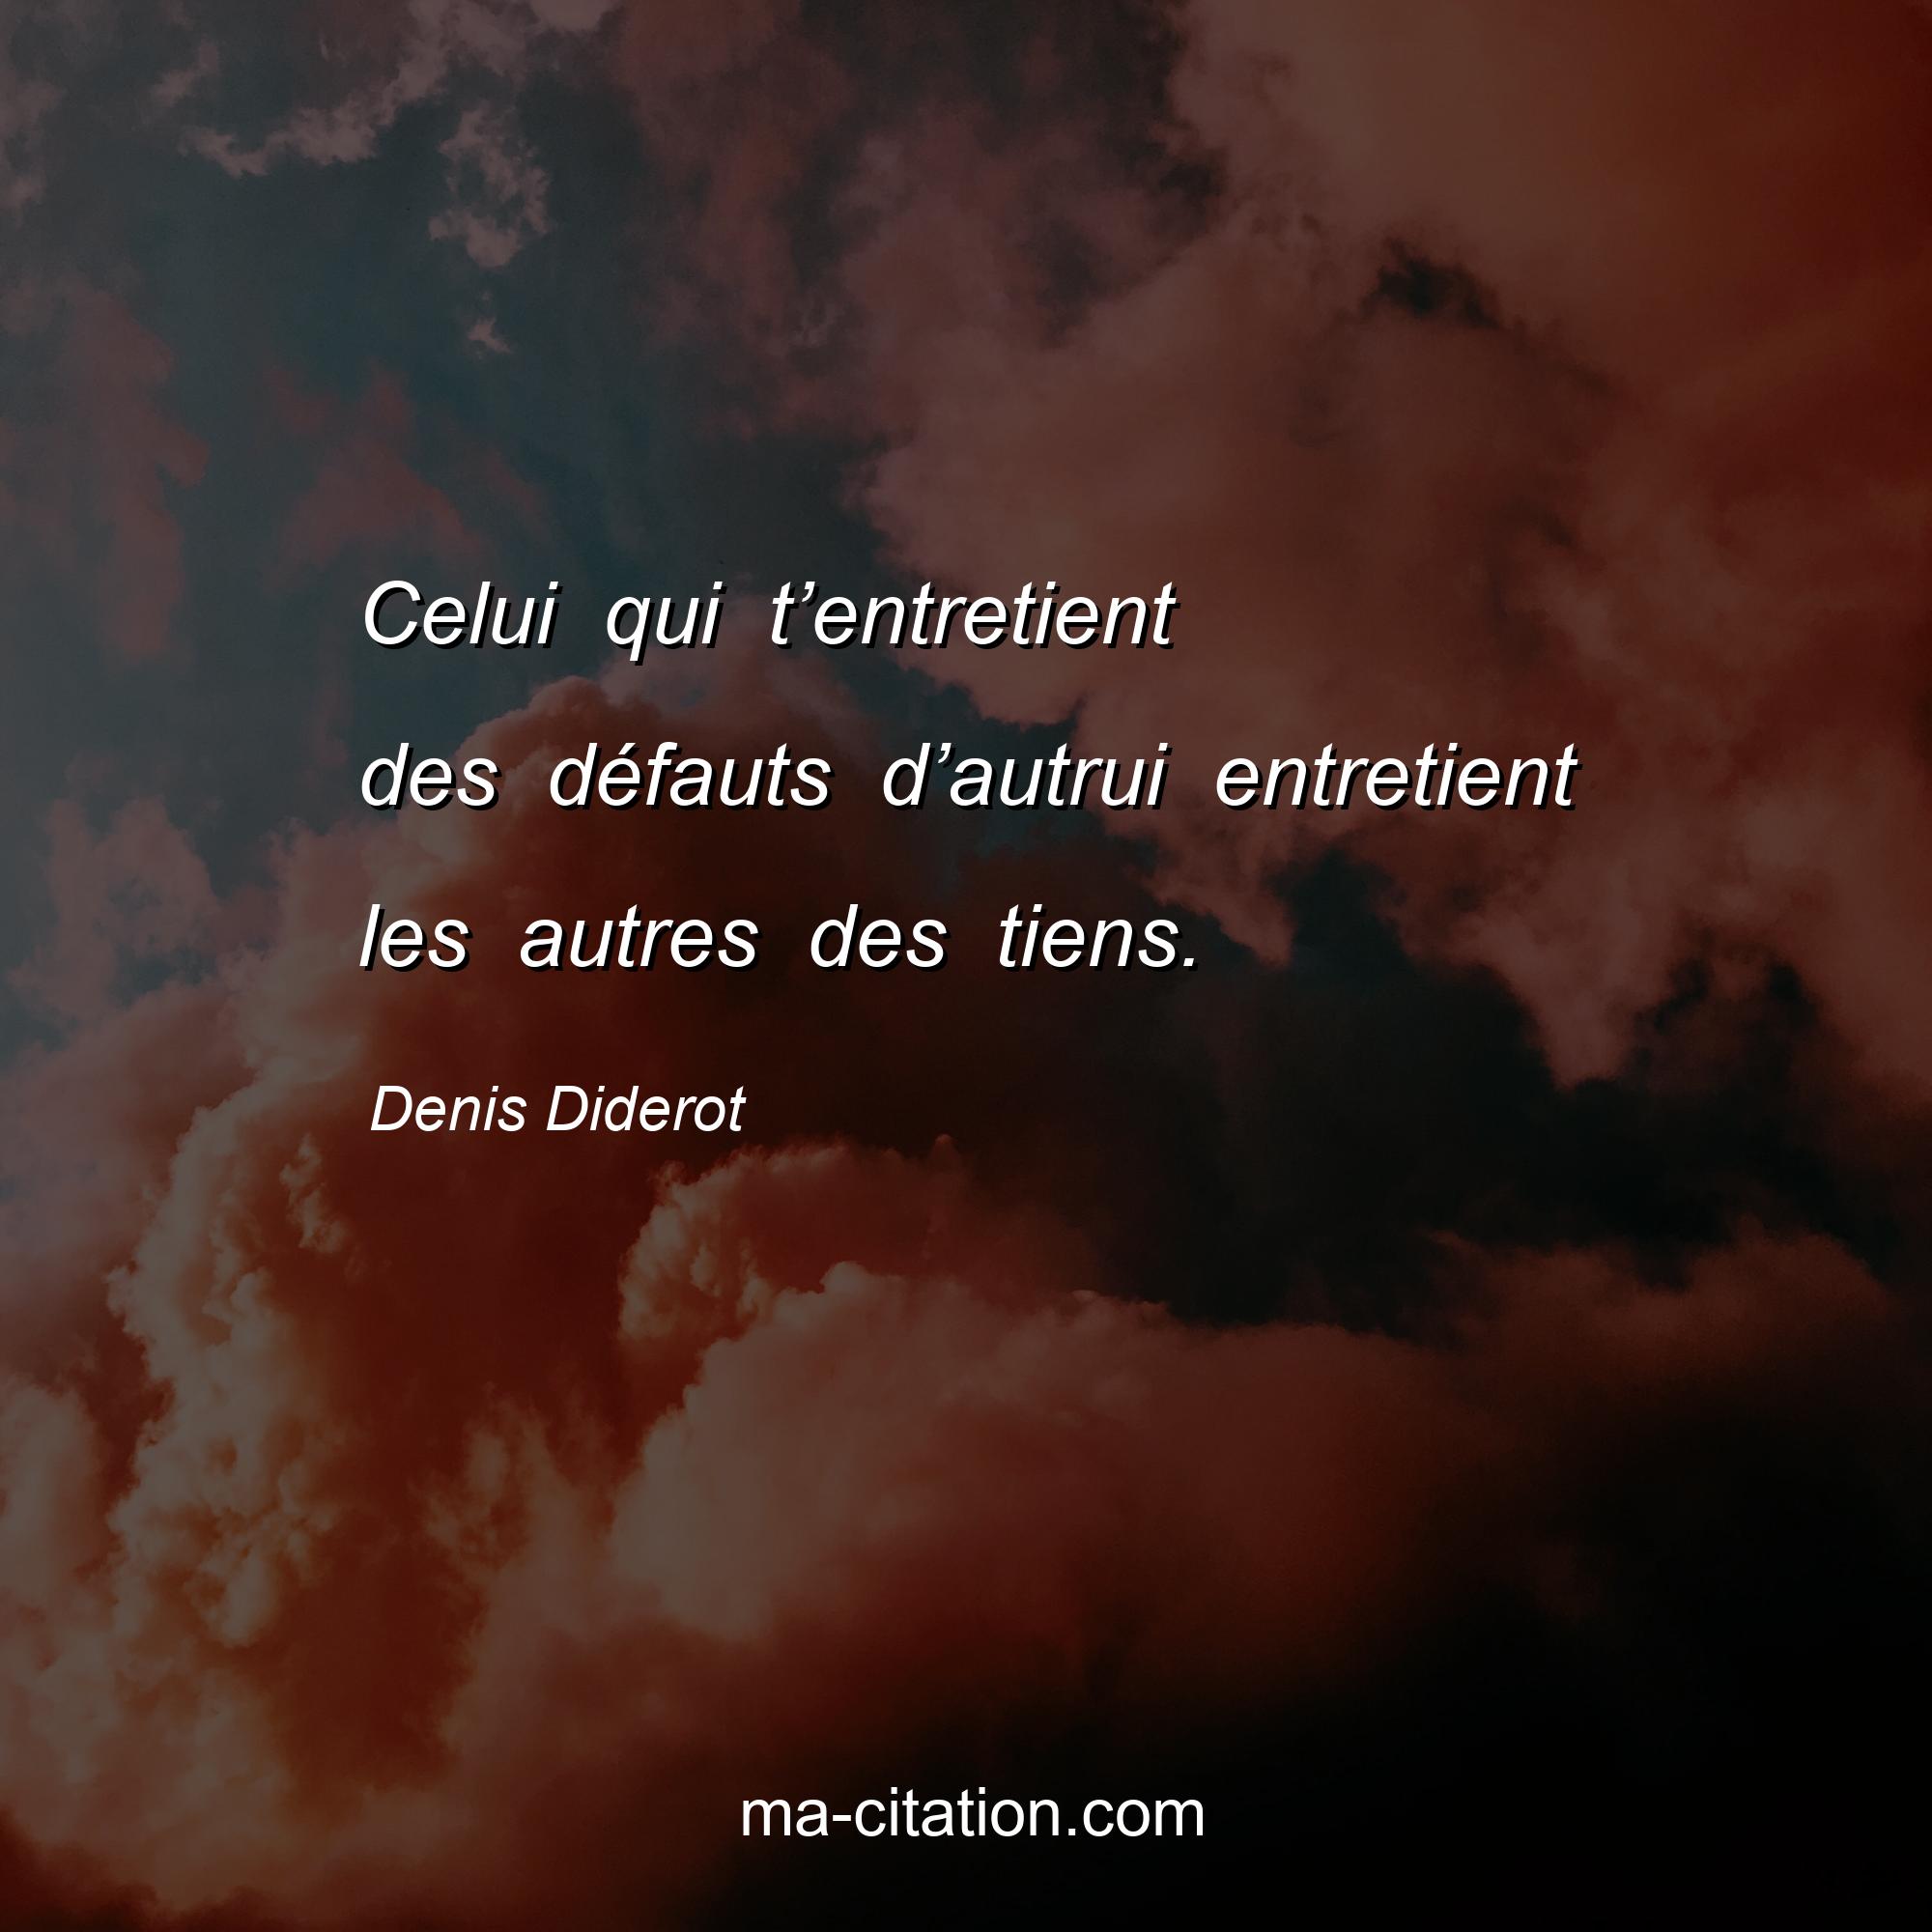 Denis Diderot : Celui qui t’entretient des défauts d’autrui entretient les autres des tiens.